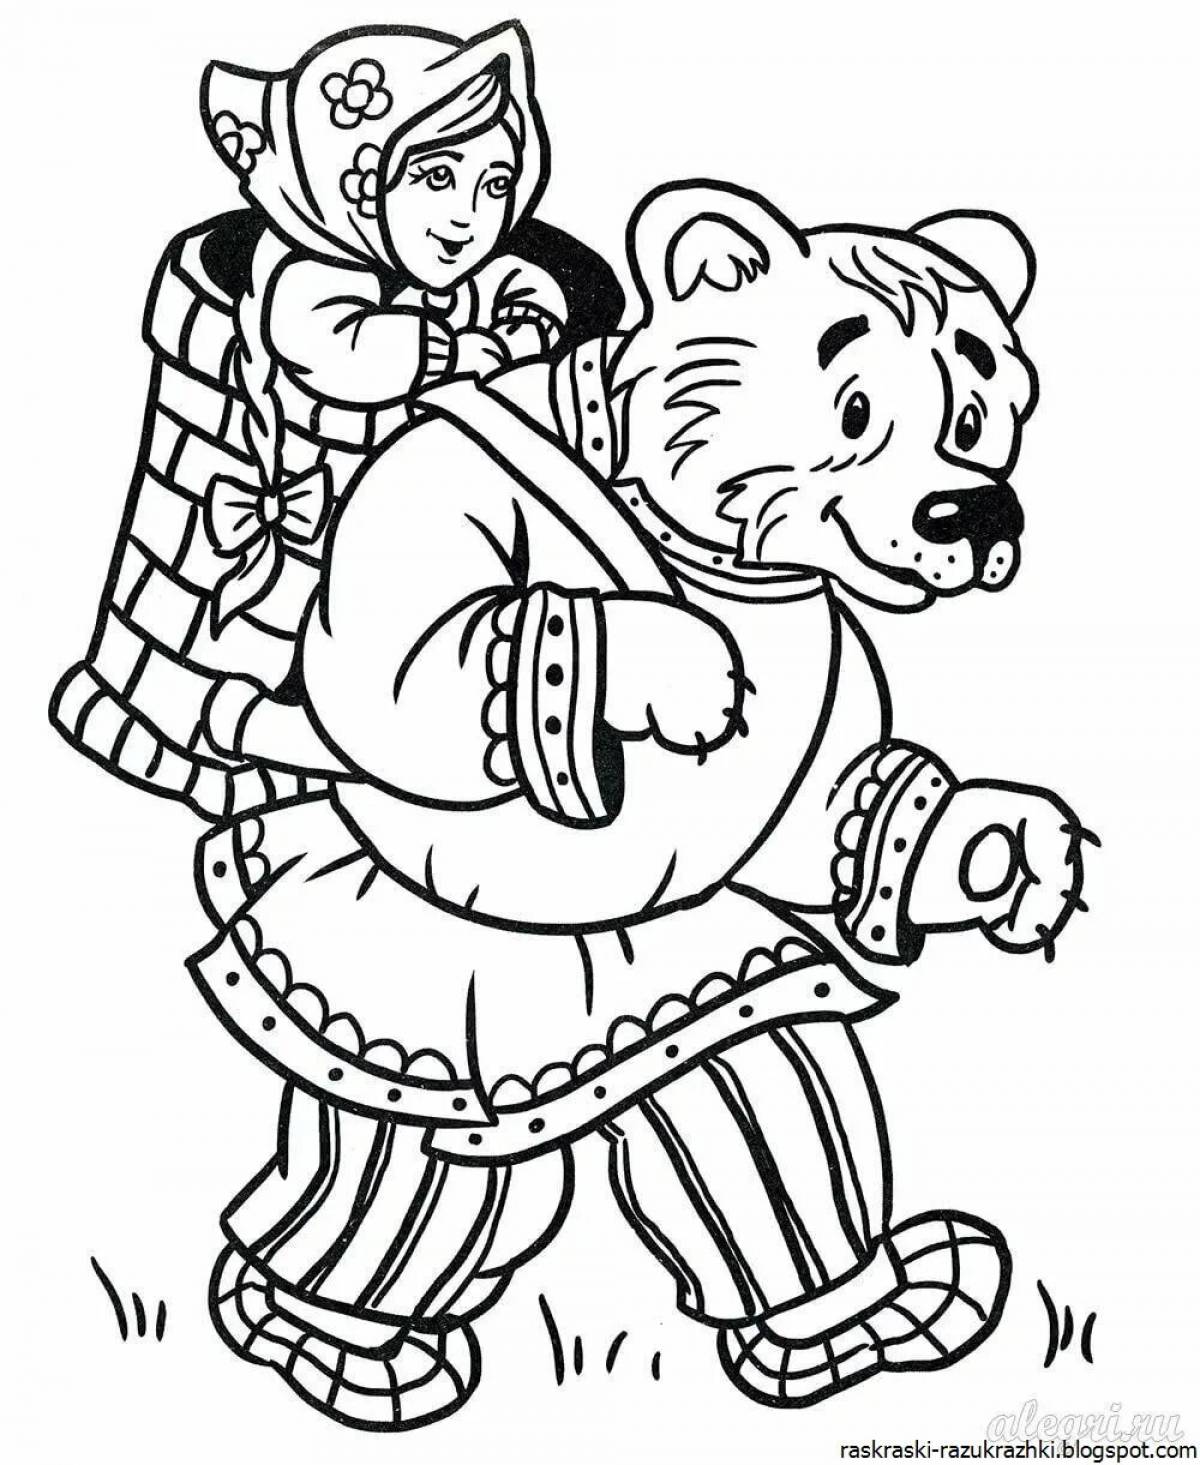 Русских народных сказок для детей дошкольного возраста #1